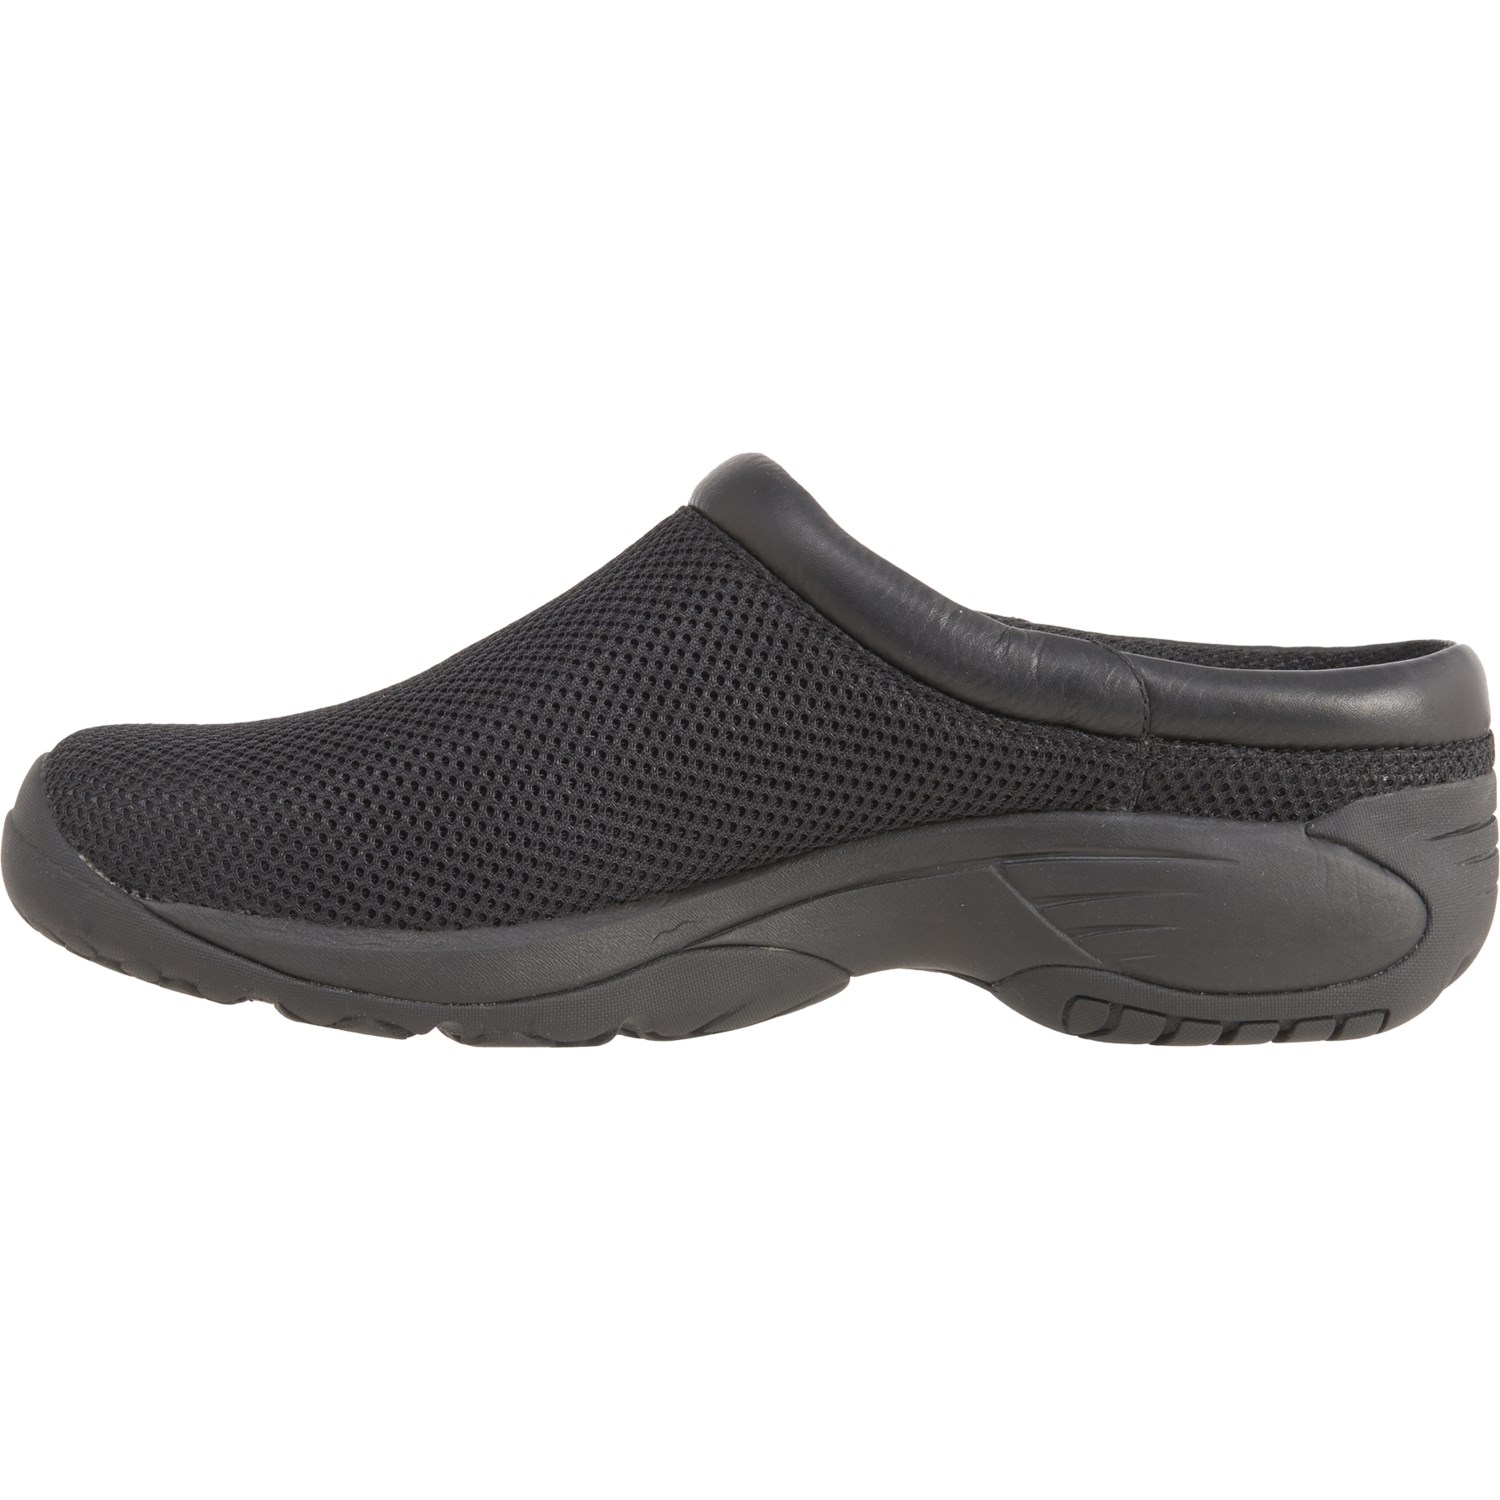 Merrell Encore Bypass 2 Slide Shoes (For Men) - Save 36%